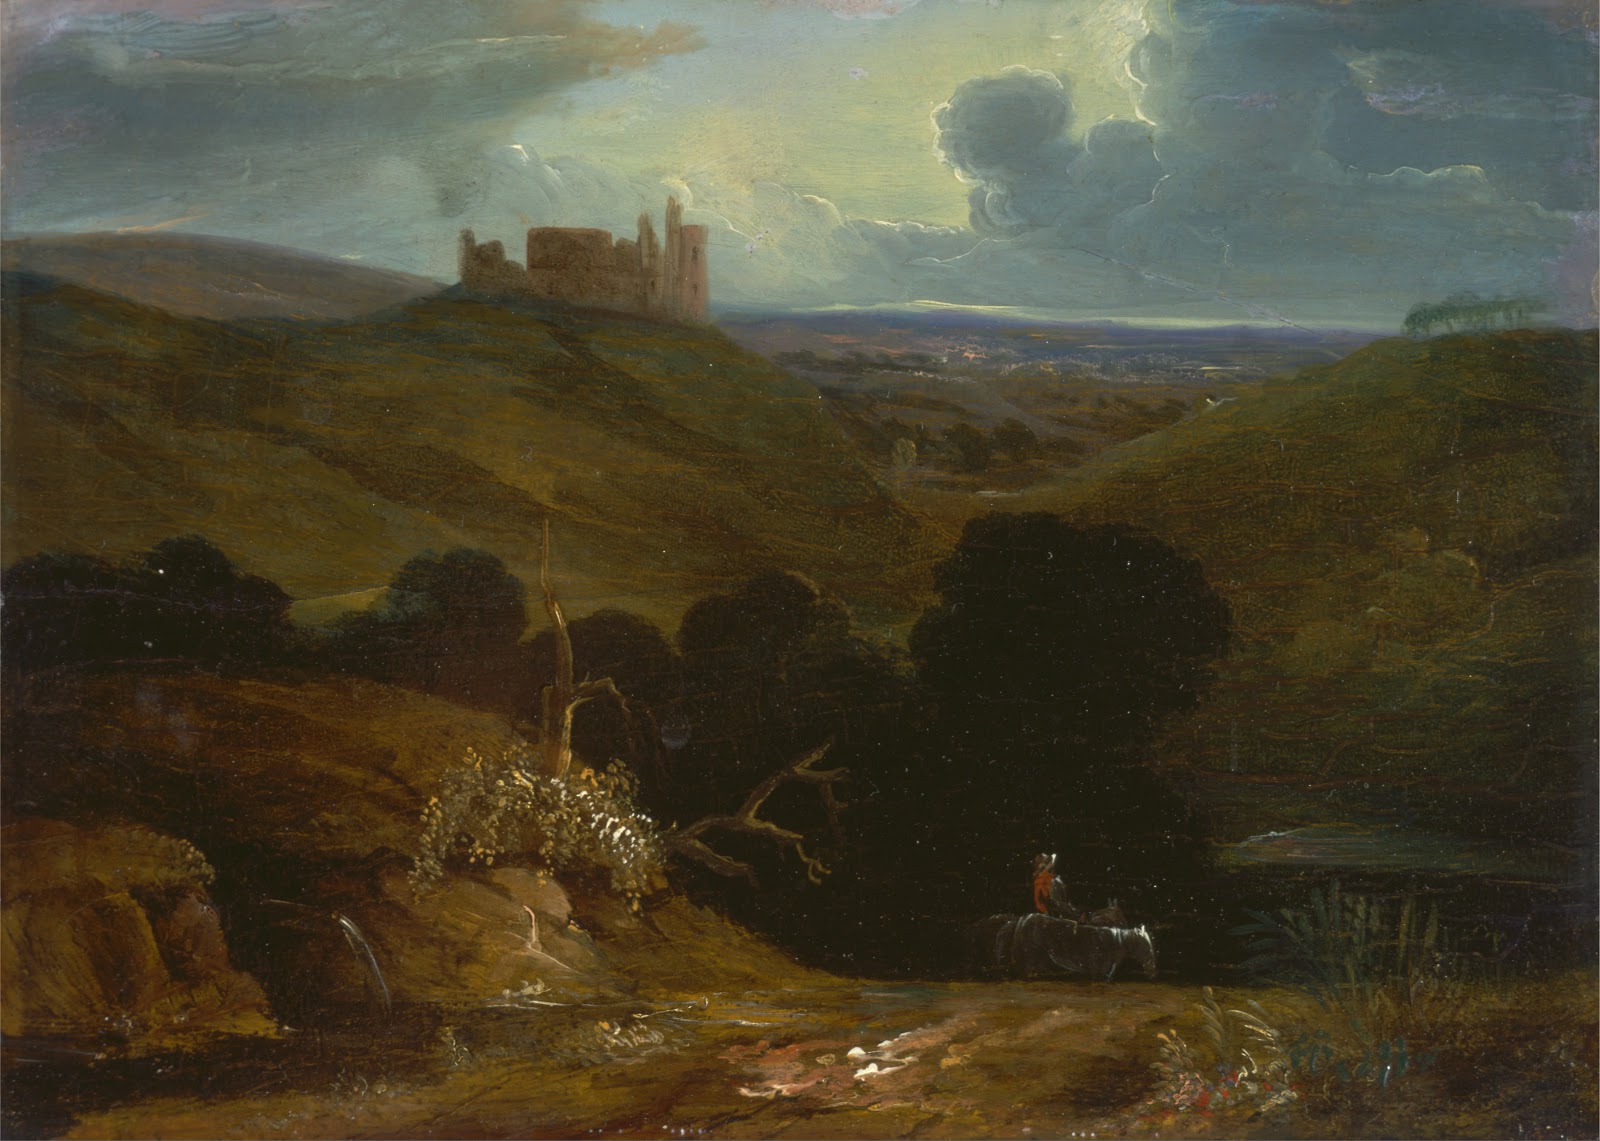 John+Martin+Landscape-1789-1854 (49).jpg